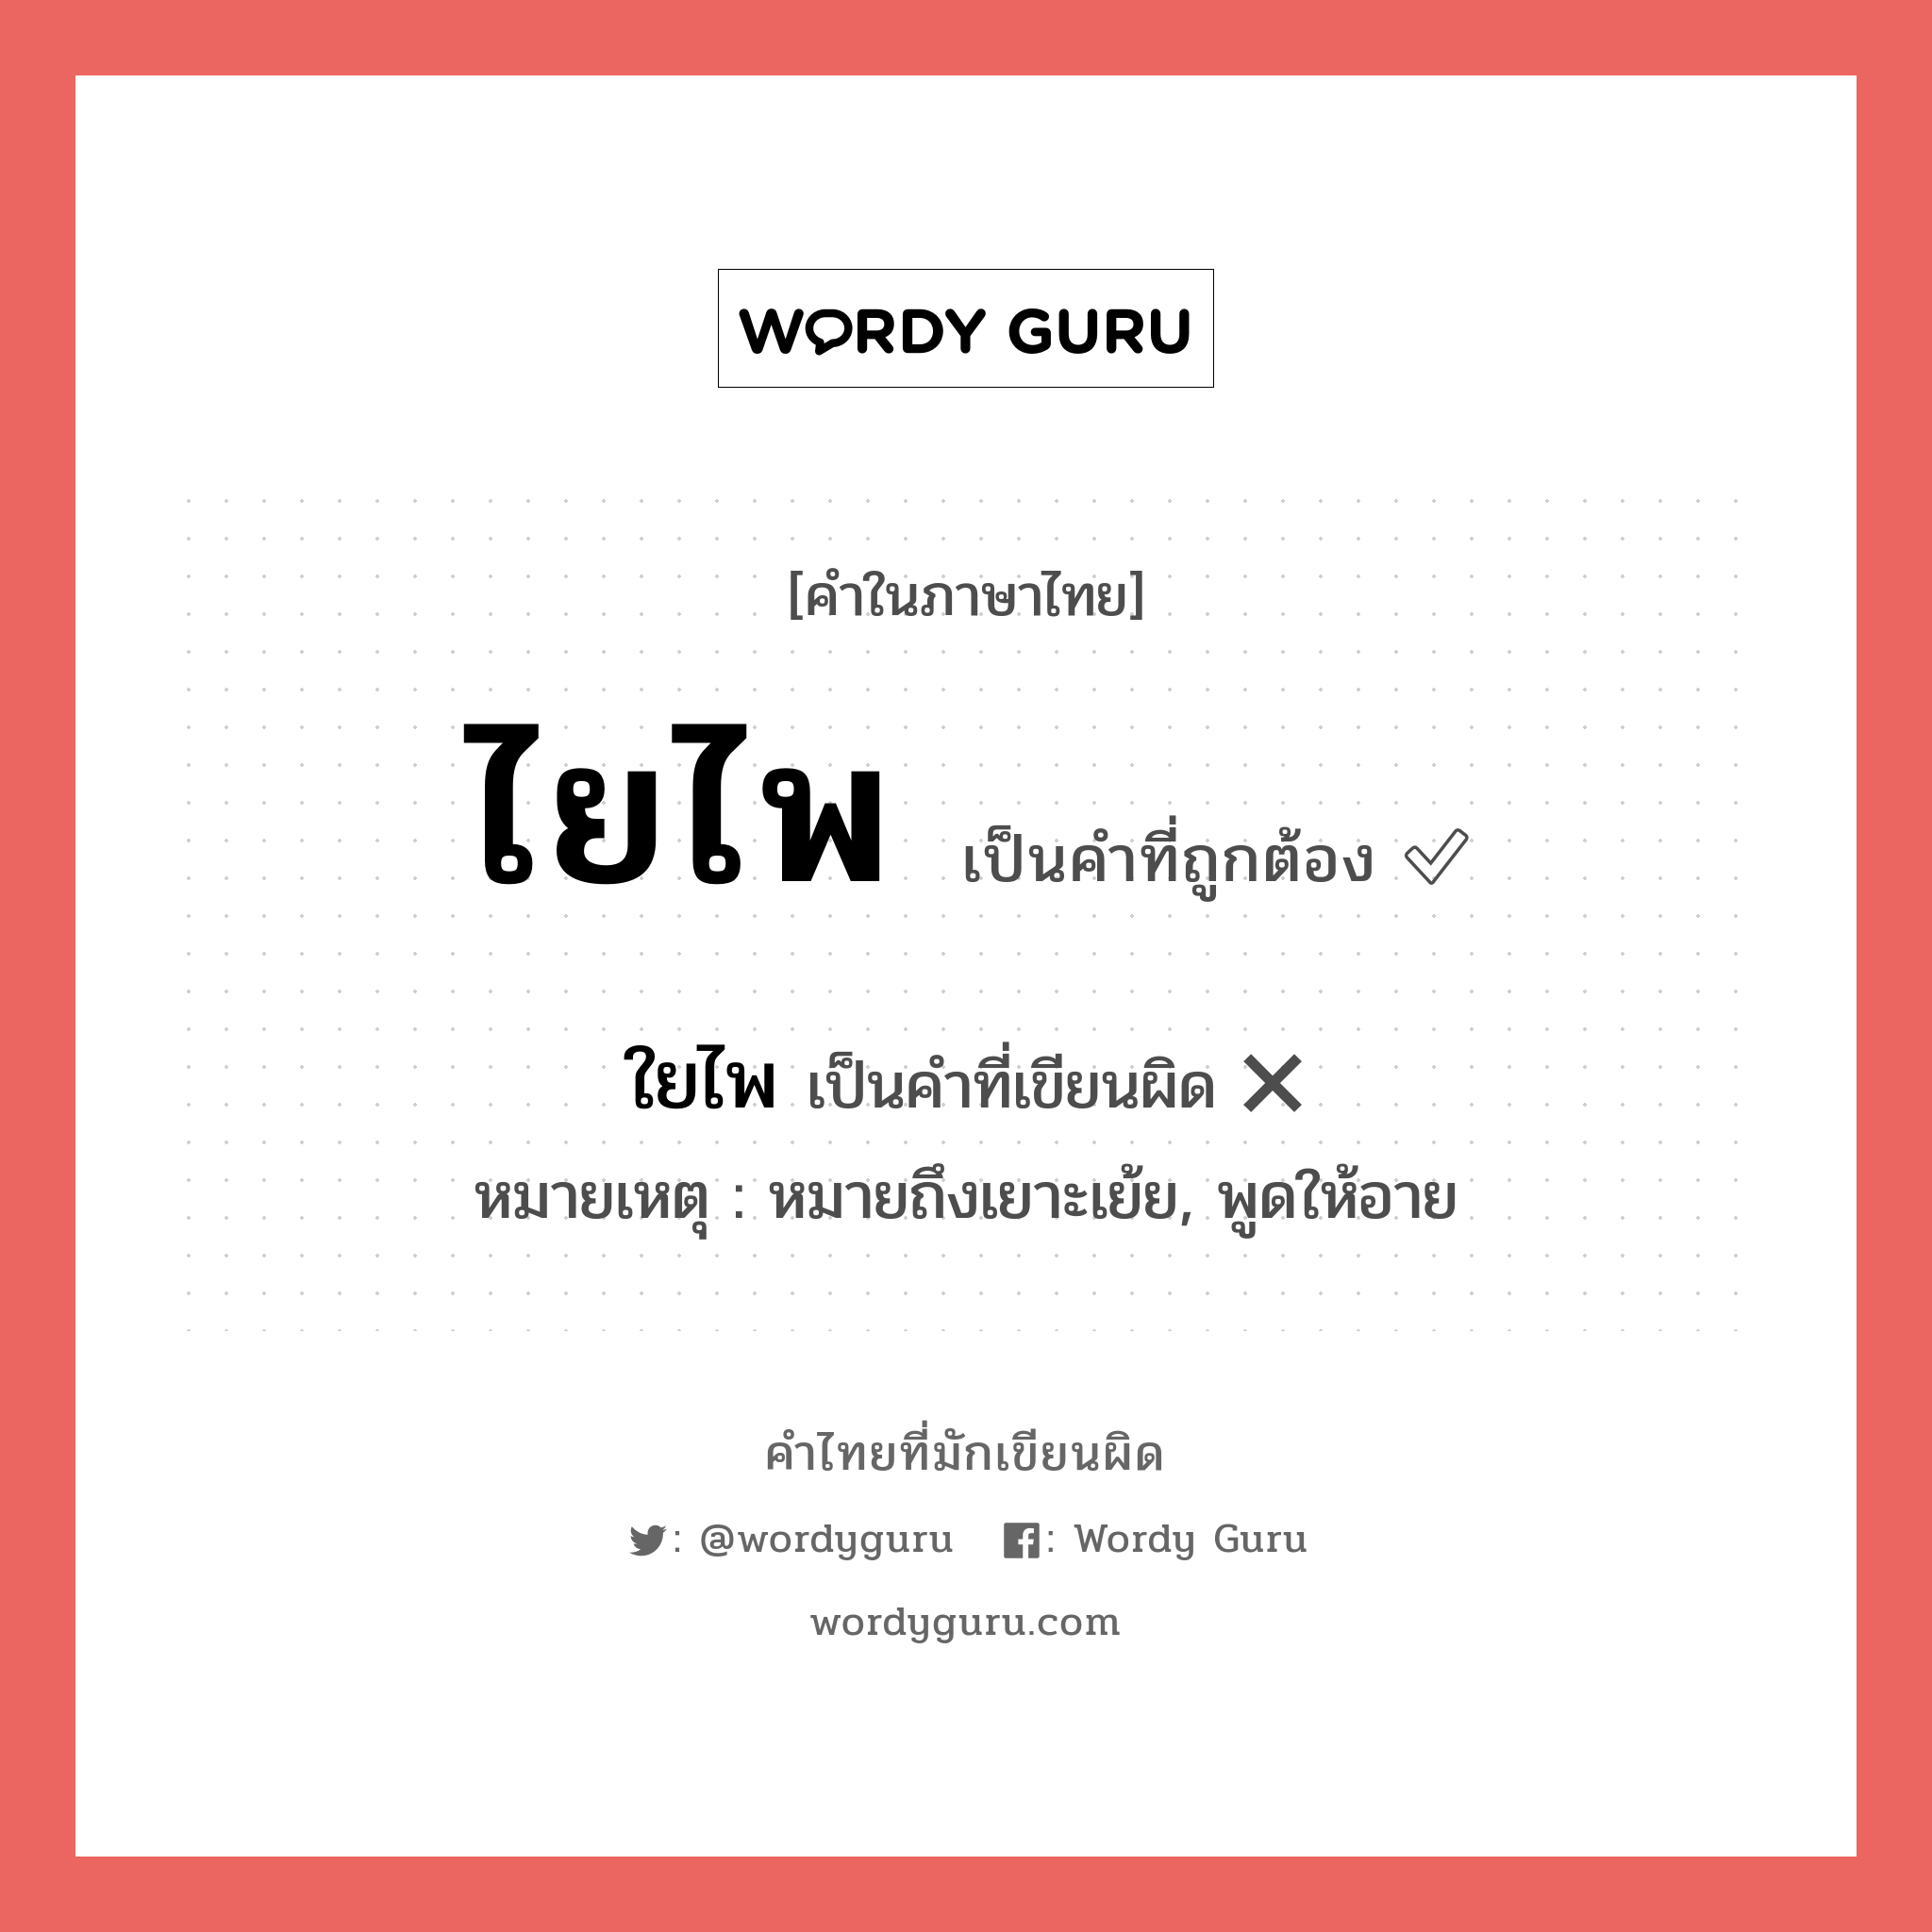 ใยไพ หรือ ไยไพ คำไหนเขียนถูก?, คำในภาษาไทยที่มักเขียนผิด ใยไพ คำที่ผิด ❌ ไยไพ หมายเหตุ หมายถึงเยาะเย้ย, พูดให้อาย